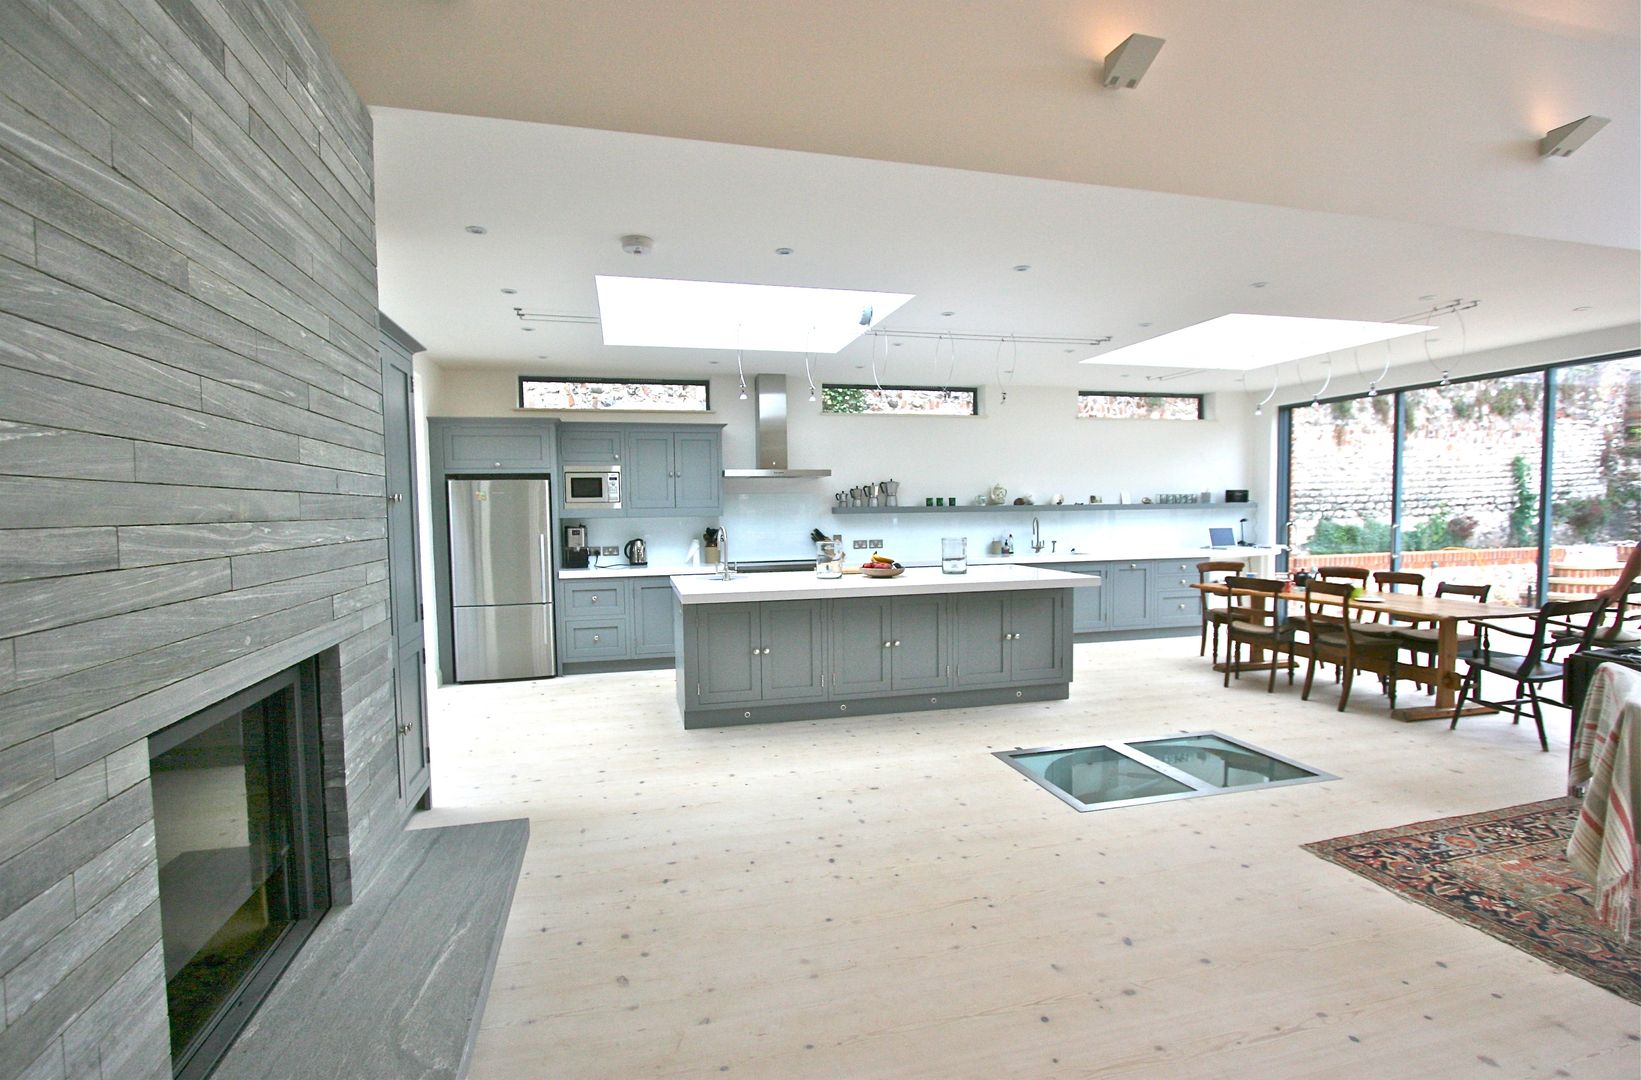 Brancaster, North Norfolk, UK Laura Gompertz Interiors Ltd Cucina in stile classico grey kitchen,kitchen island,island,contemporary kitchen,modern kitchen,large kitchen,grey and white,white worktop